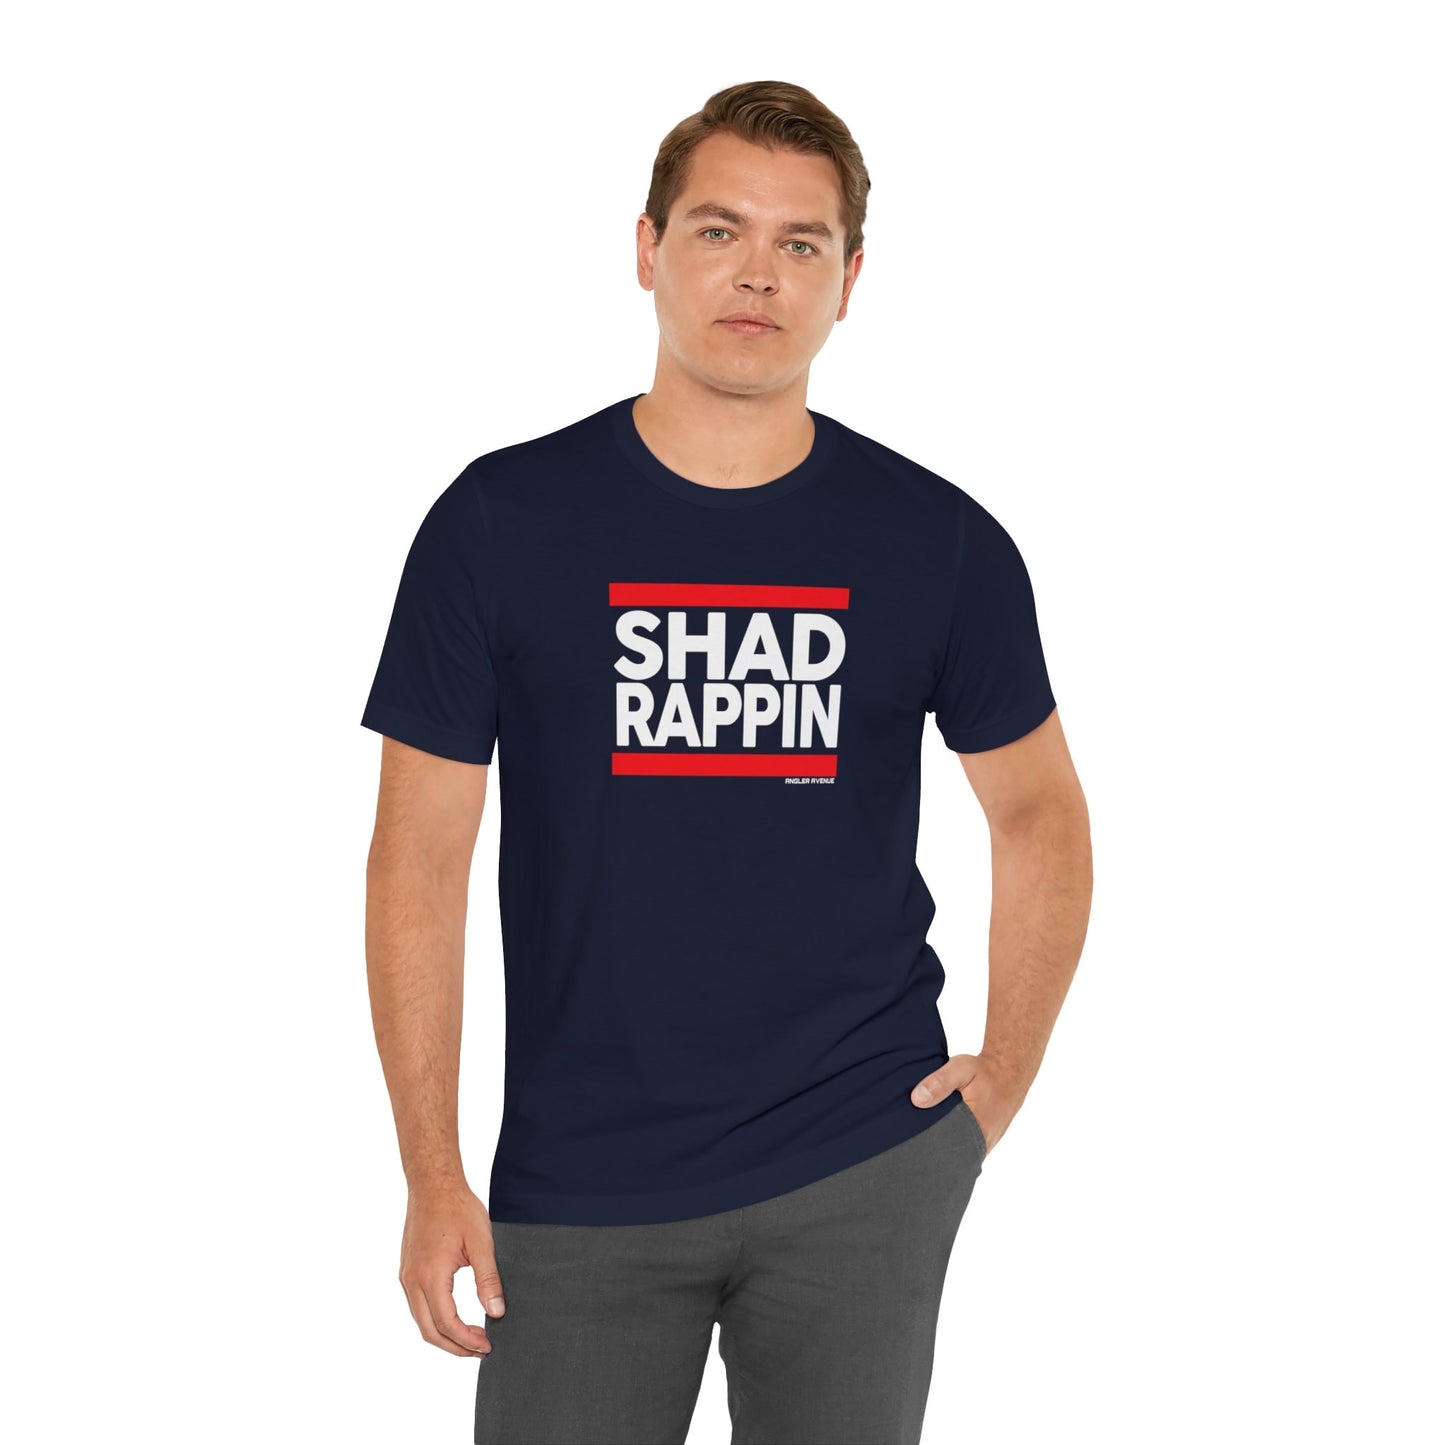 Shad Rappin T-Shirt